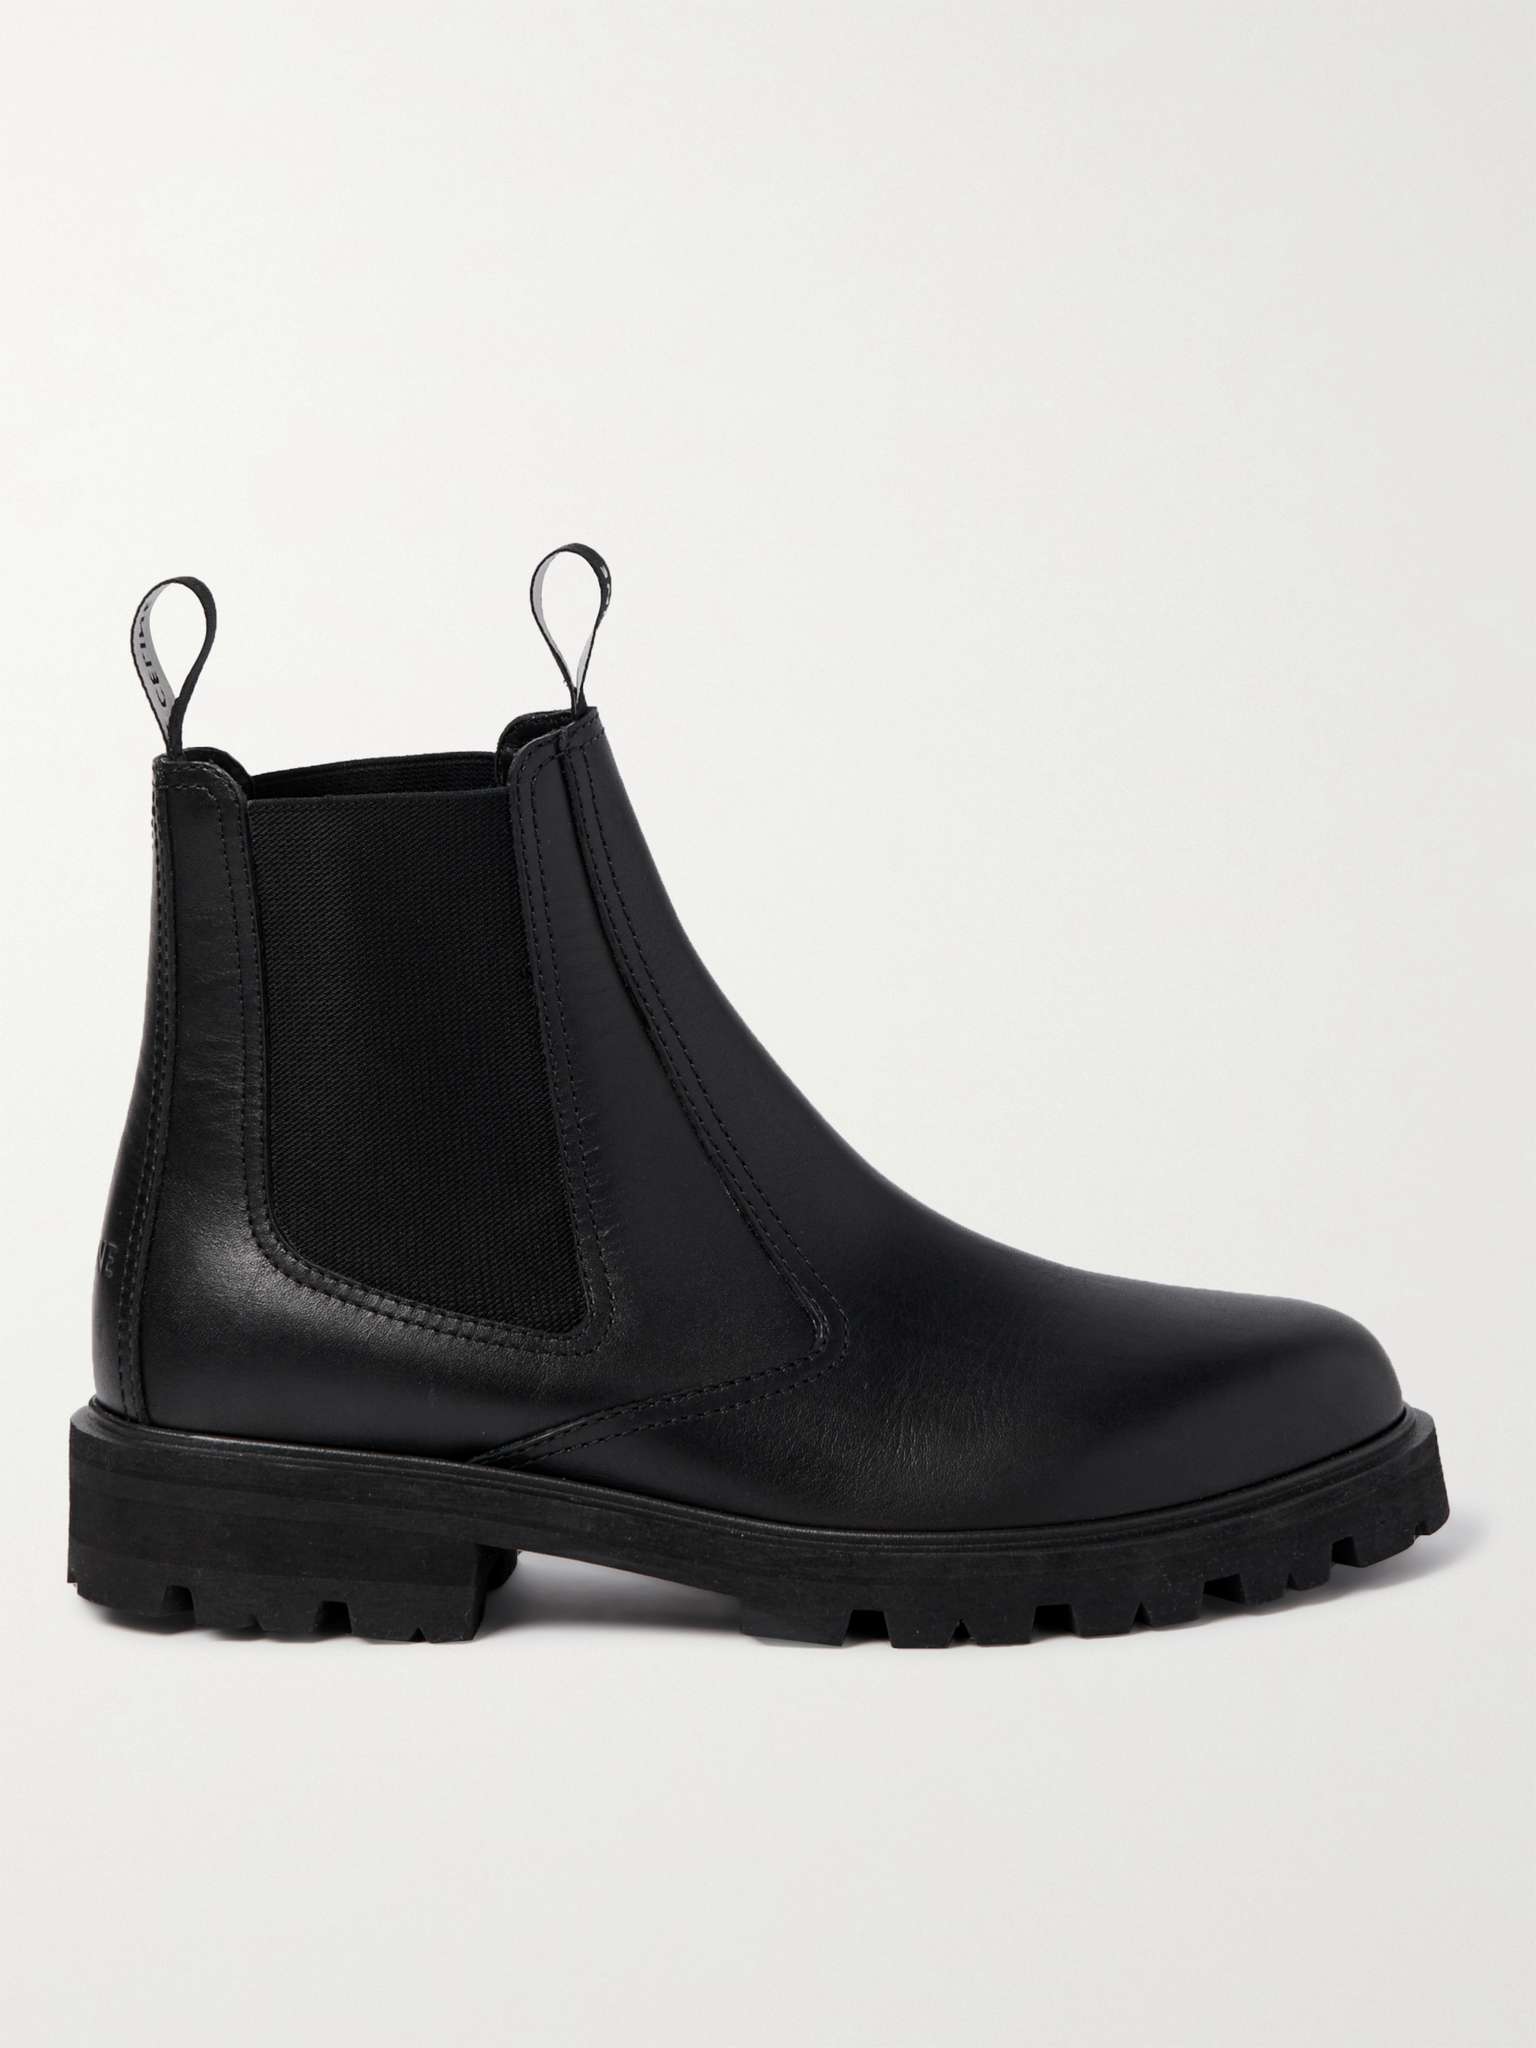 Black Margaret Leather Chelsea Boots | CELINE HOMME | MR PORTER